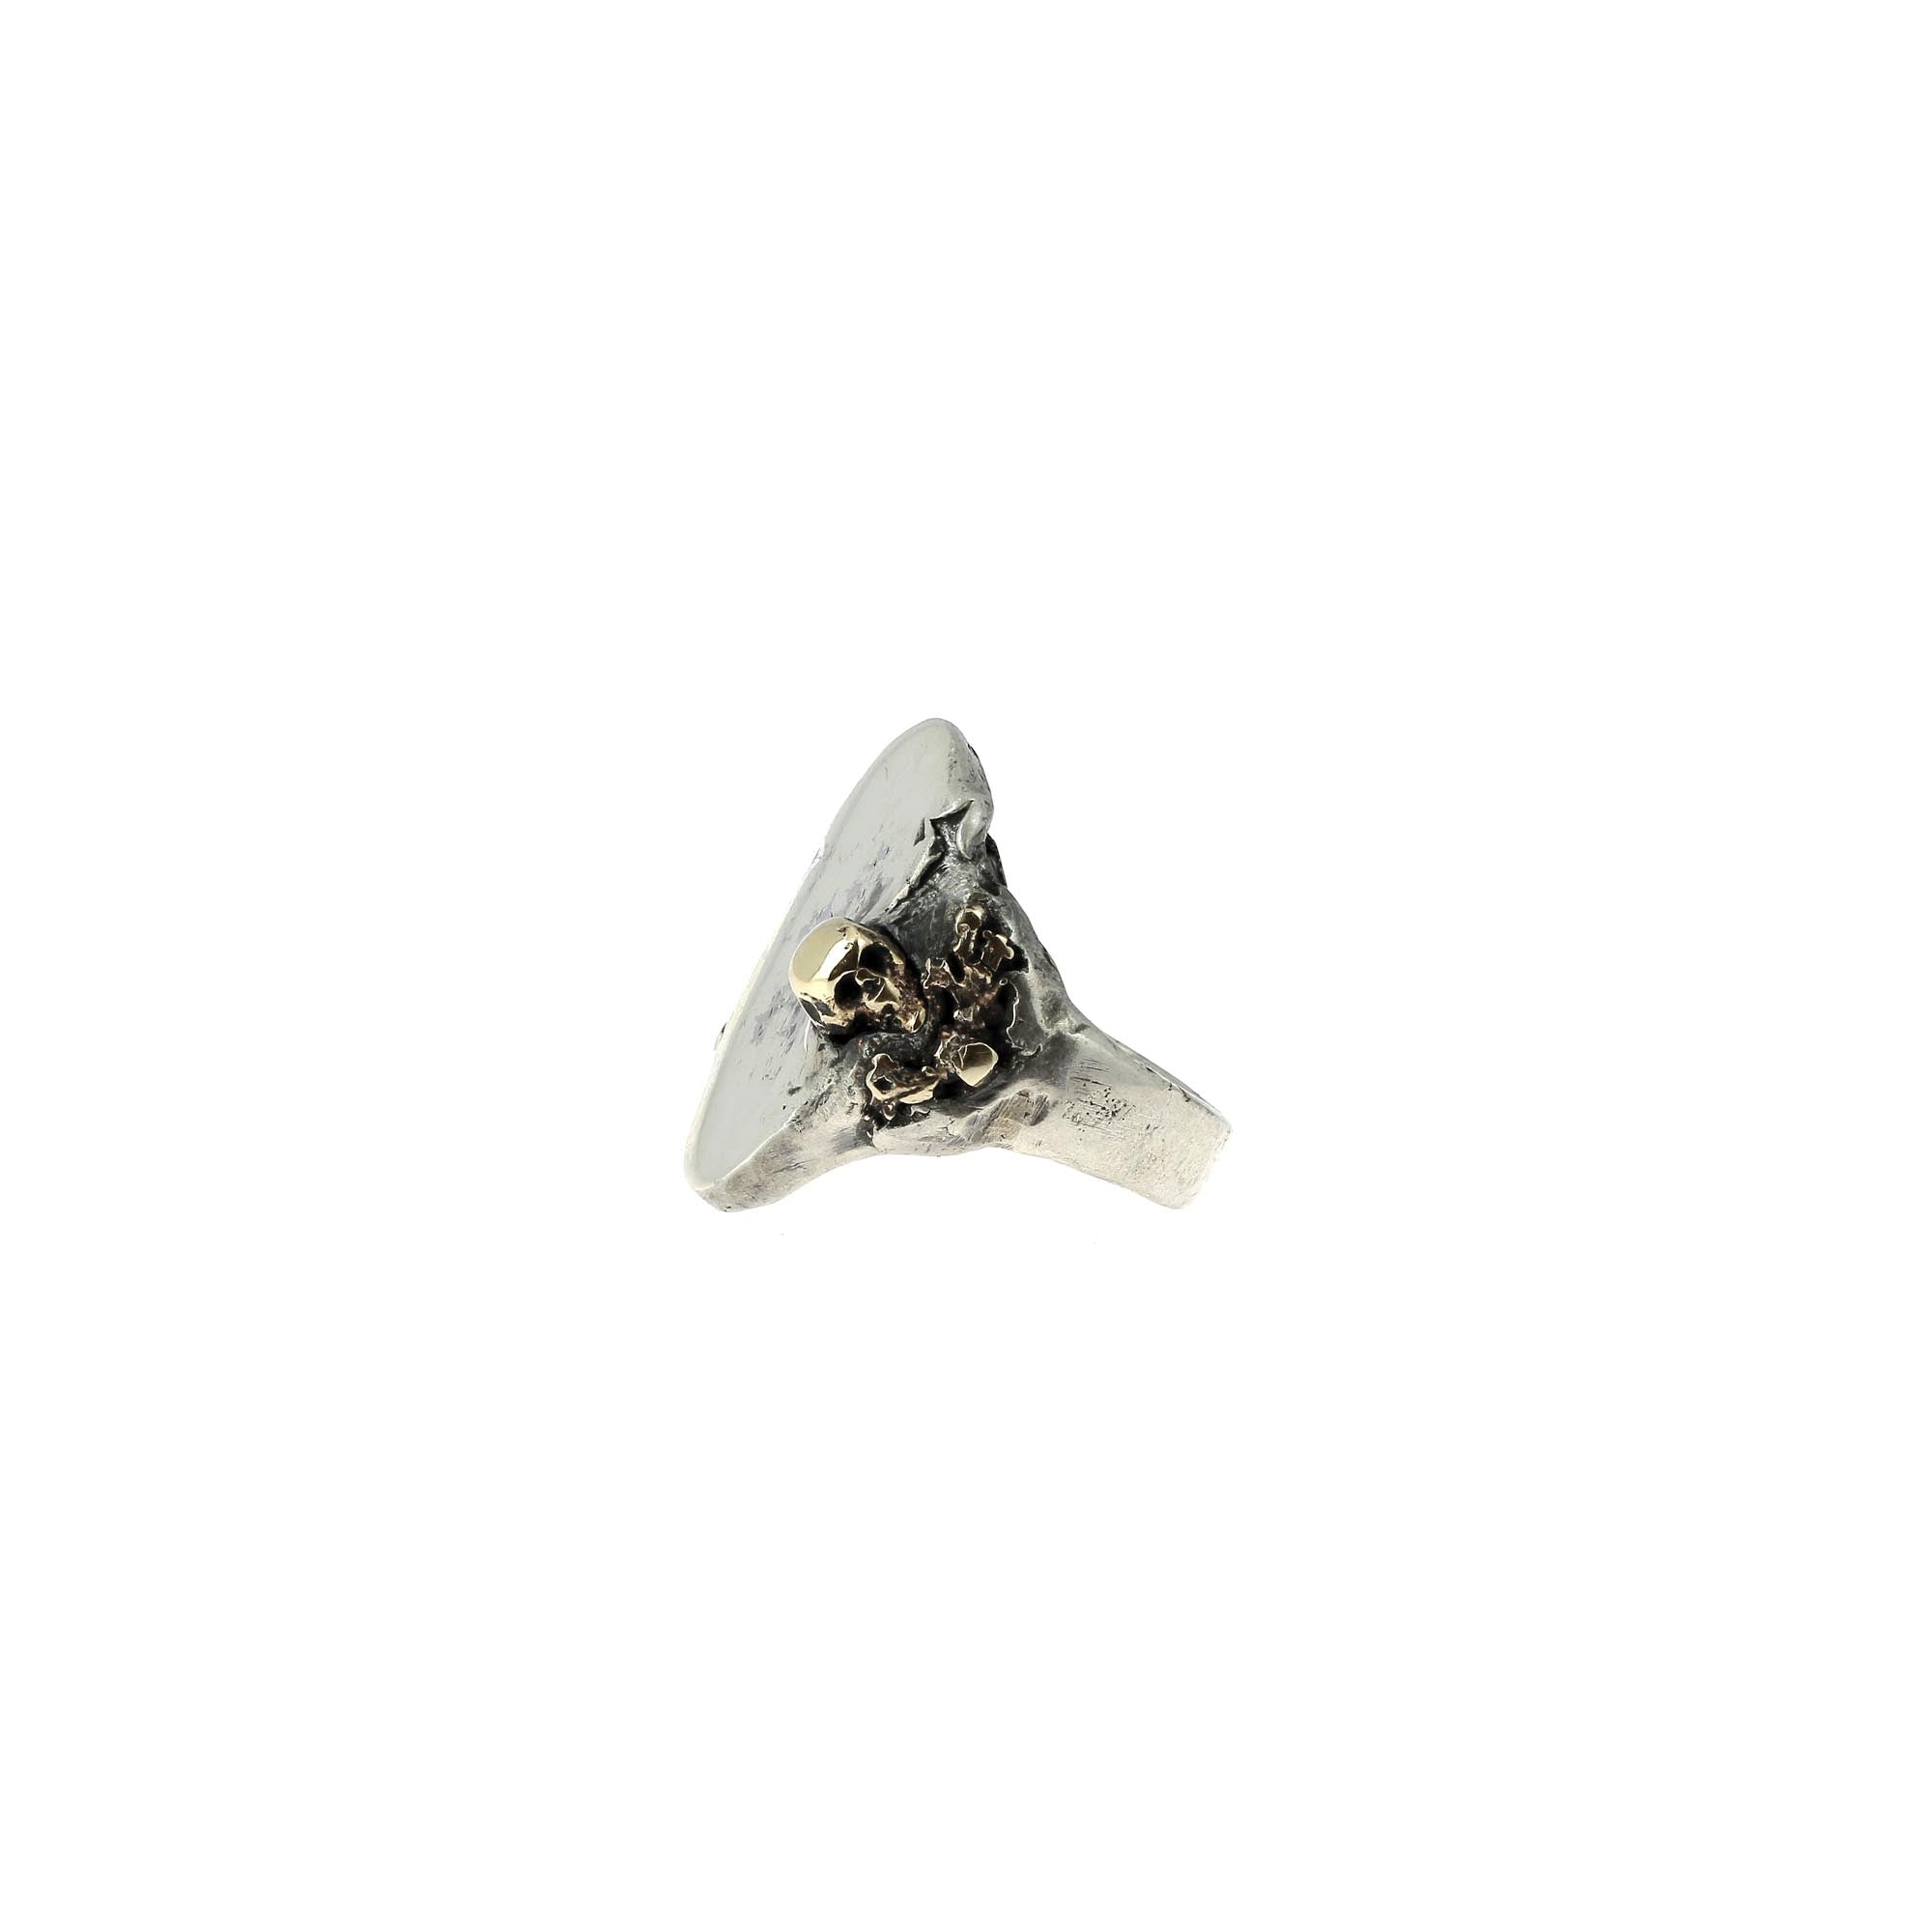 Totenkopf-Siegelring mit schwarzem Diamant und dunklem Saphir